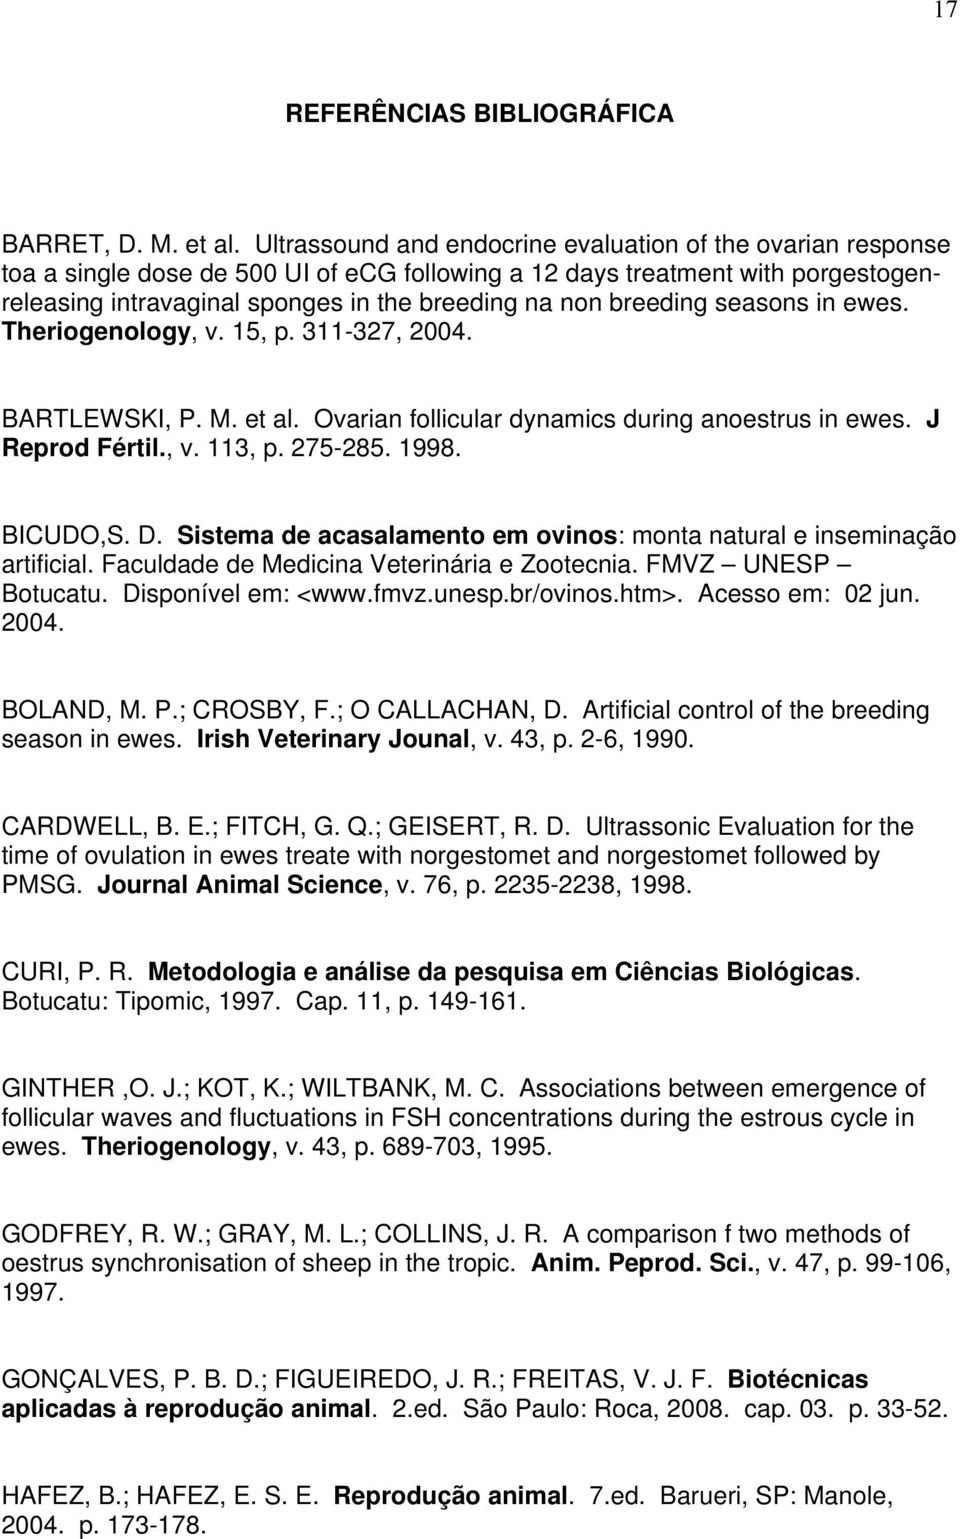 breeding seasons in ewes. Theriogenology, v. 15, p. 311-327, 2004. BARTLEWSKI, P. M. et al. Ovarian follicular dynamics during anoestrus in ewes. J Reprod Fértil., v. 113, p. 275-285. 1998. BICUDO,S.